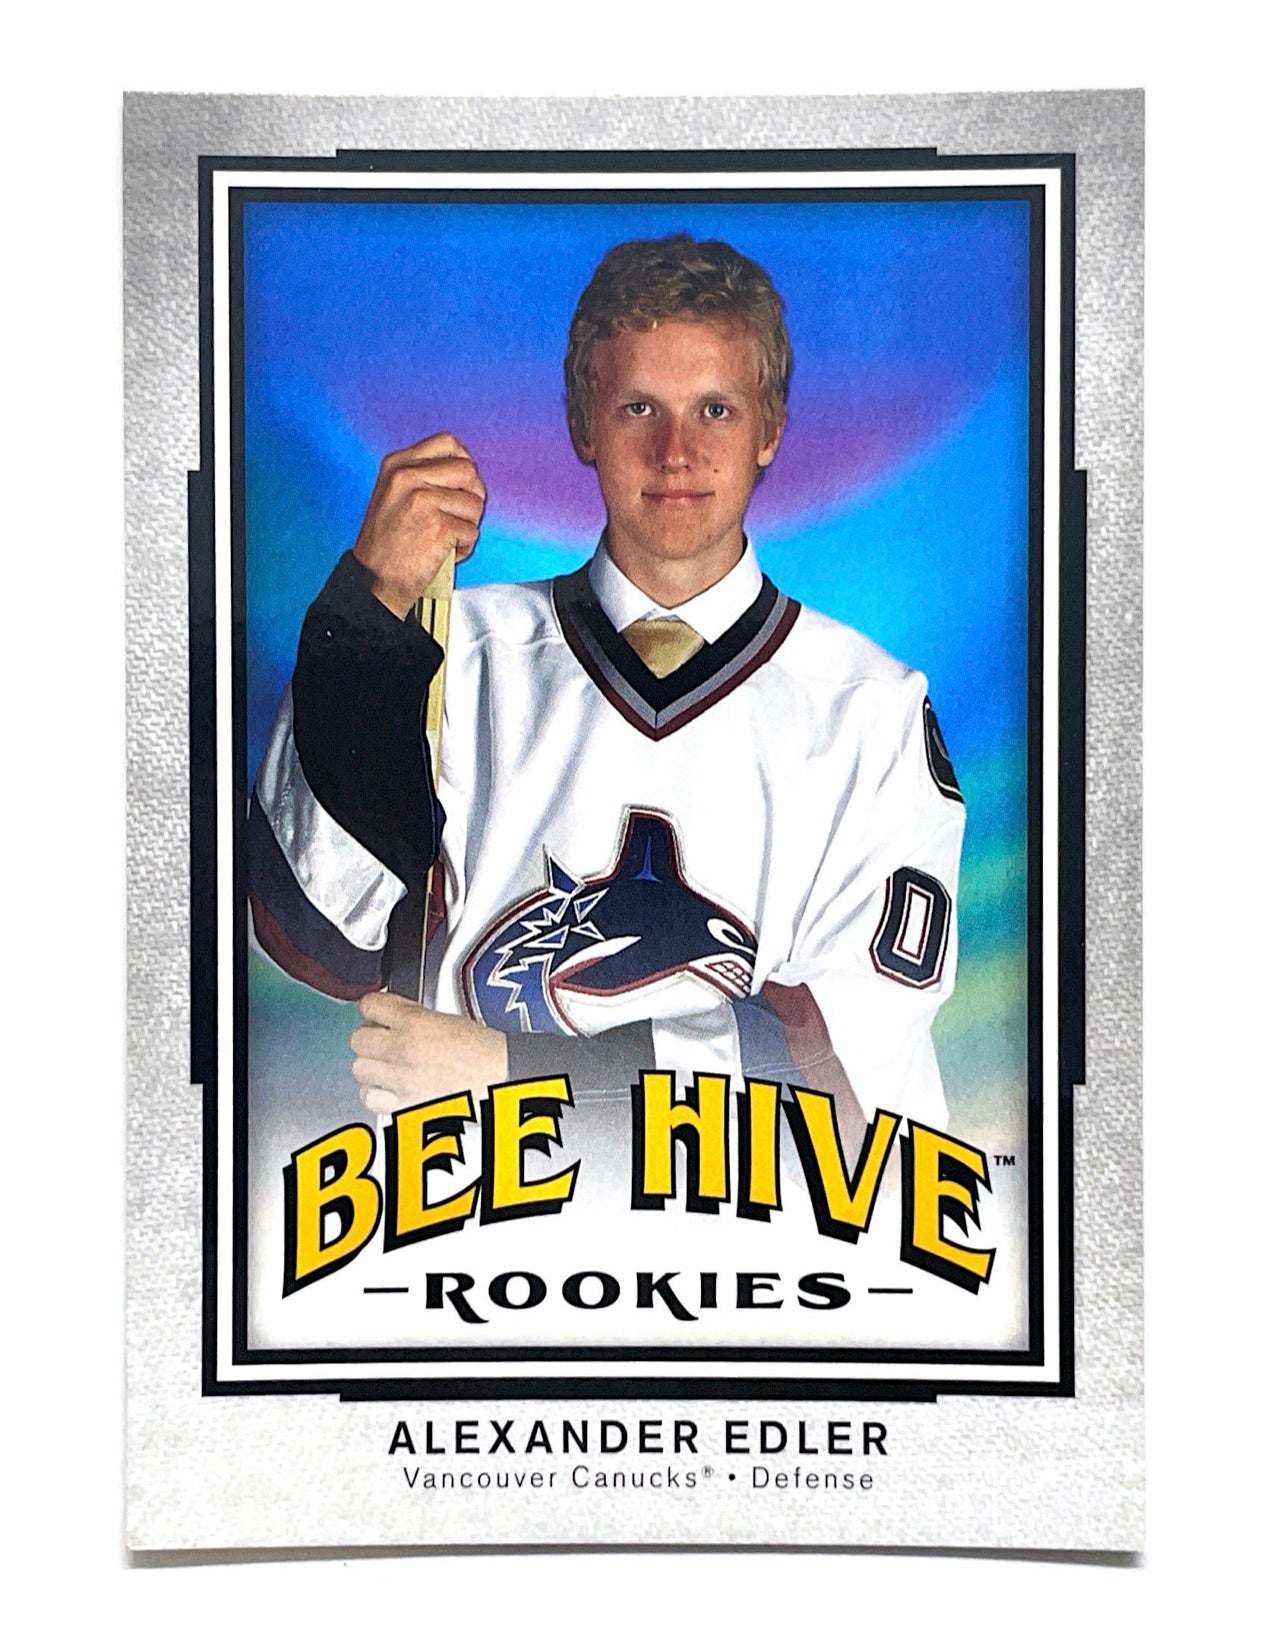 Alexander Edler 2006-07 Upper Deck Bee Hive Rookies #158